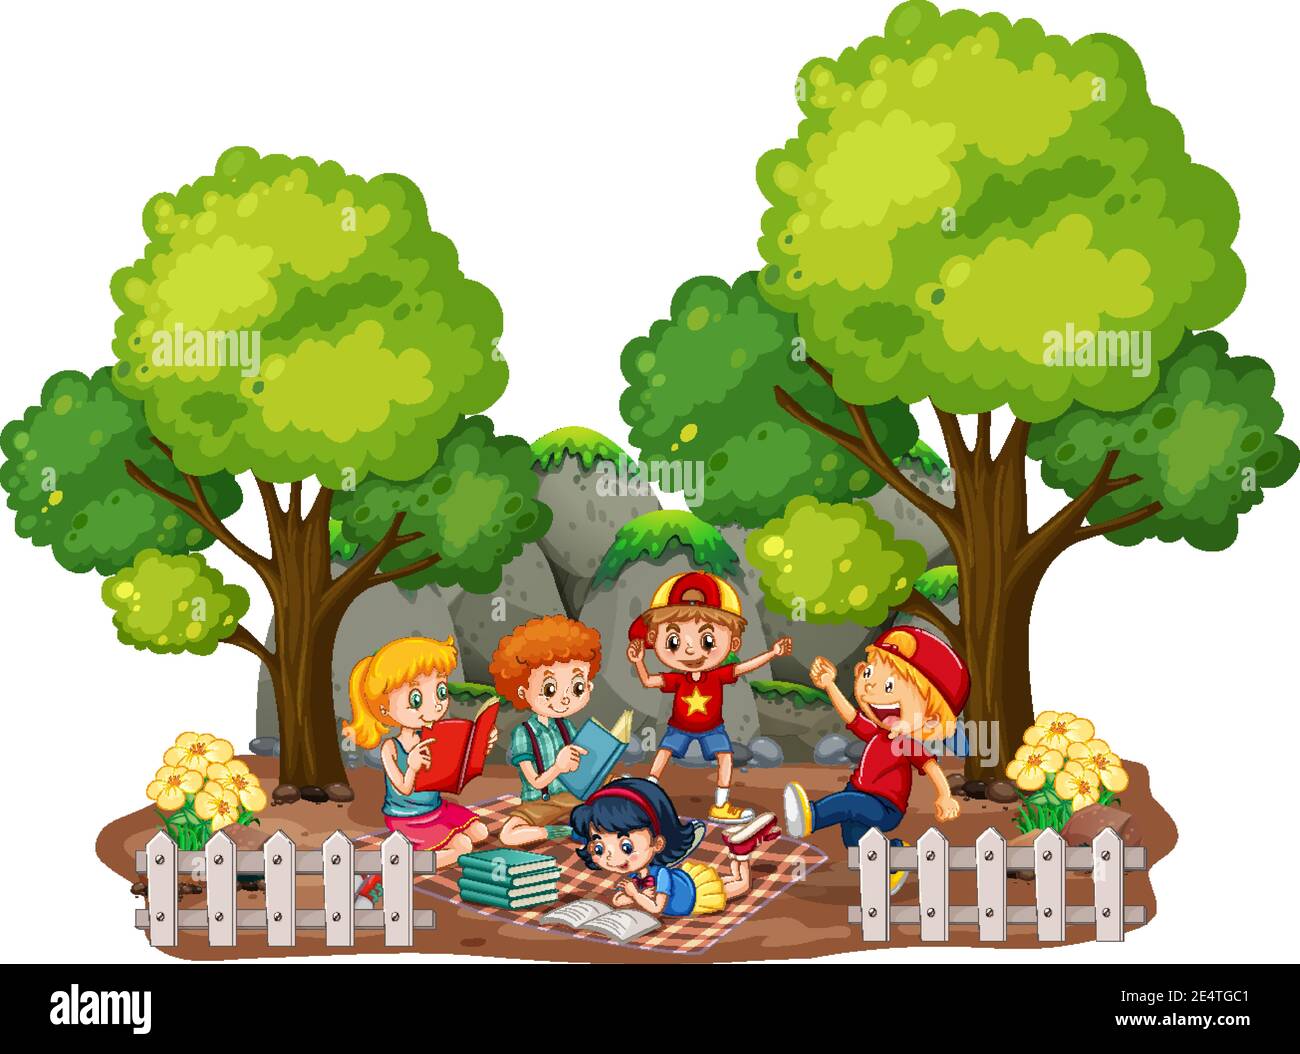 Children in the garden outdoor scene on white background illustration Stock  Vector Image & Art - Alamy